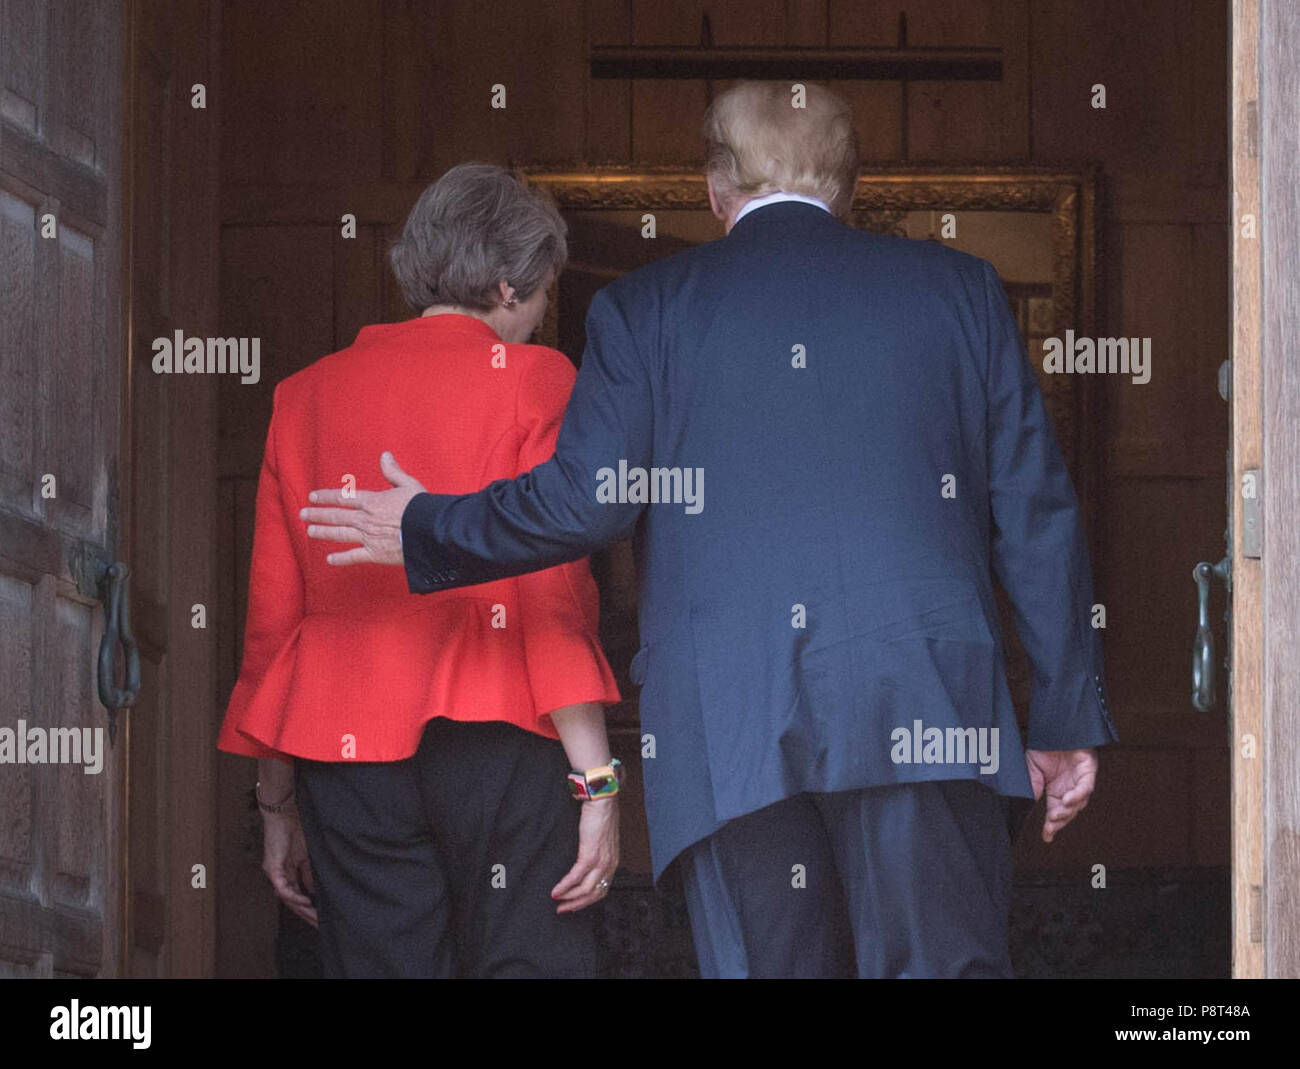 Premier ministre Theresa mai et nous Président Donald Trump à pied à travers les portes à Chequers, après son arrivée pour des entretiens à sa résidence de campagne, dans le Buckinghamshire. Banque D'Images